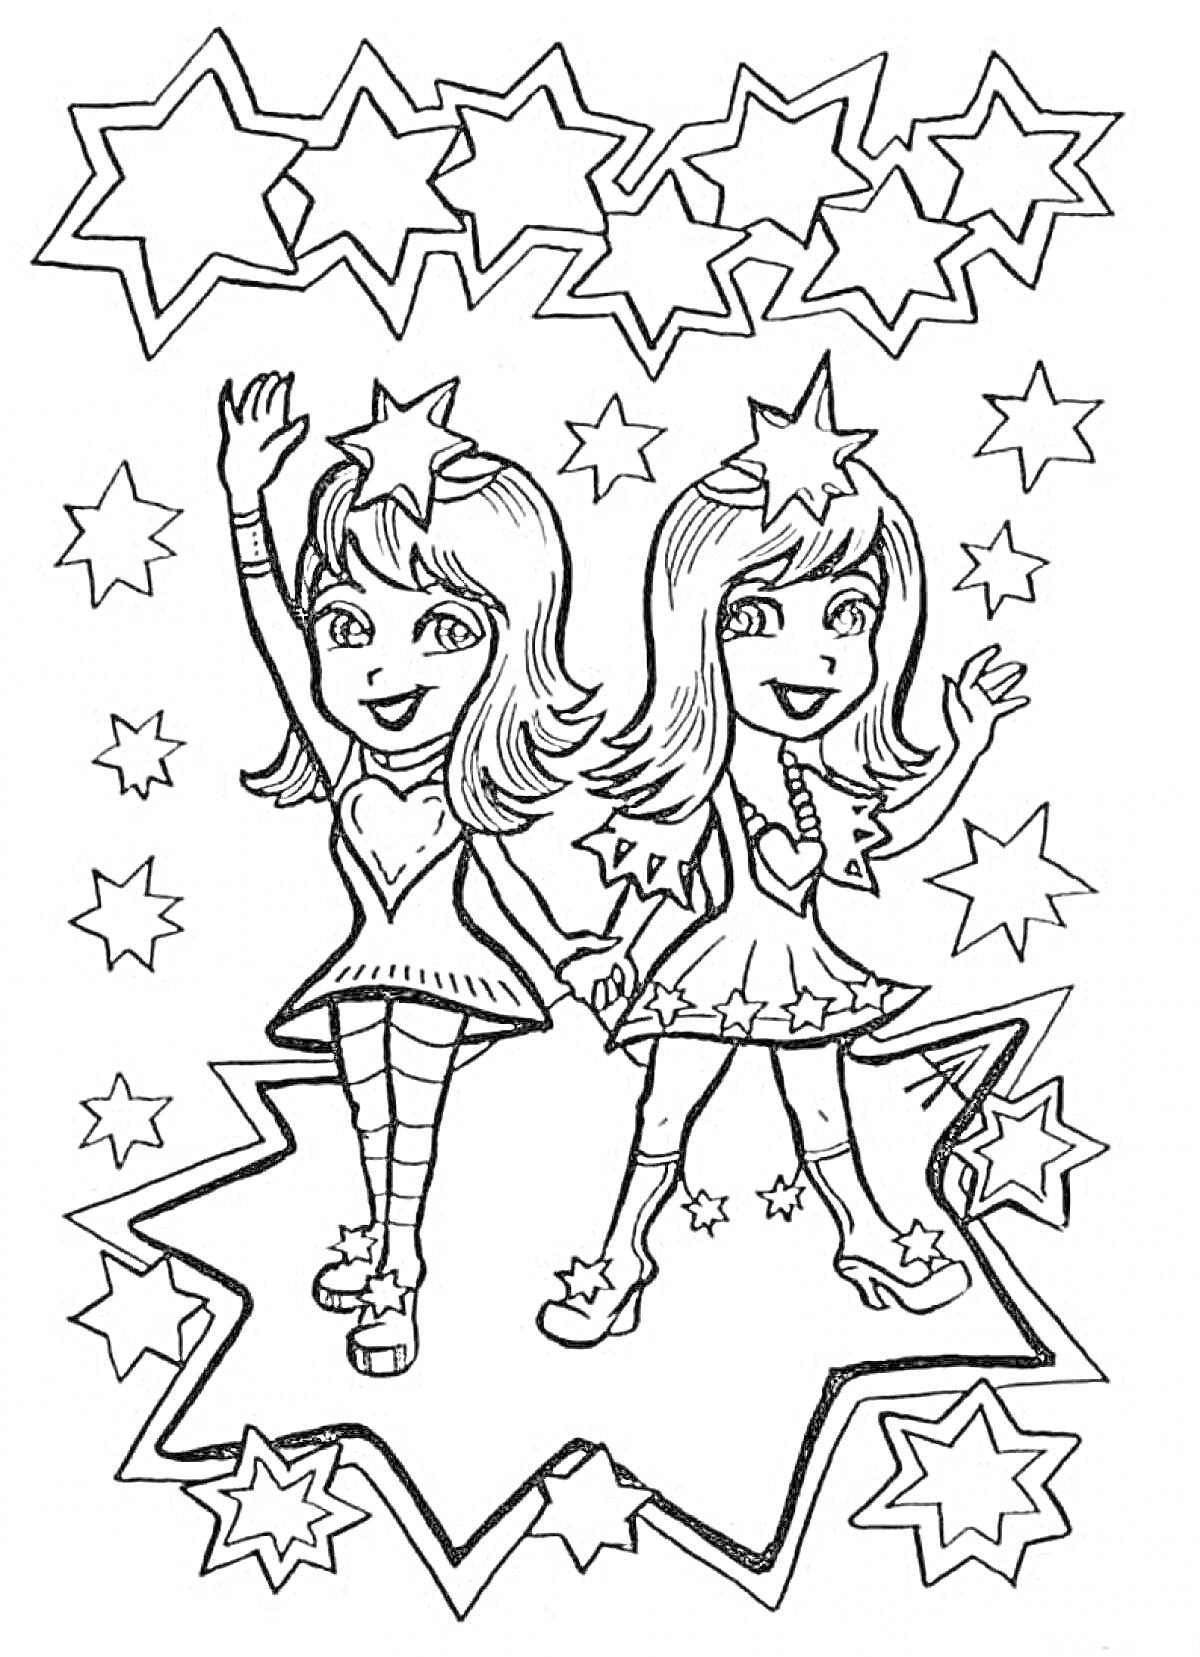 Два девочки-звезды на фоне множества звезд